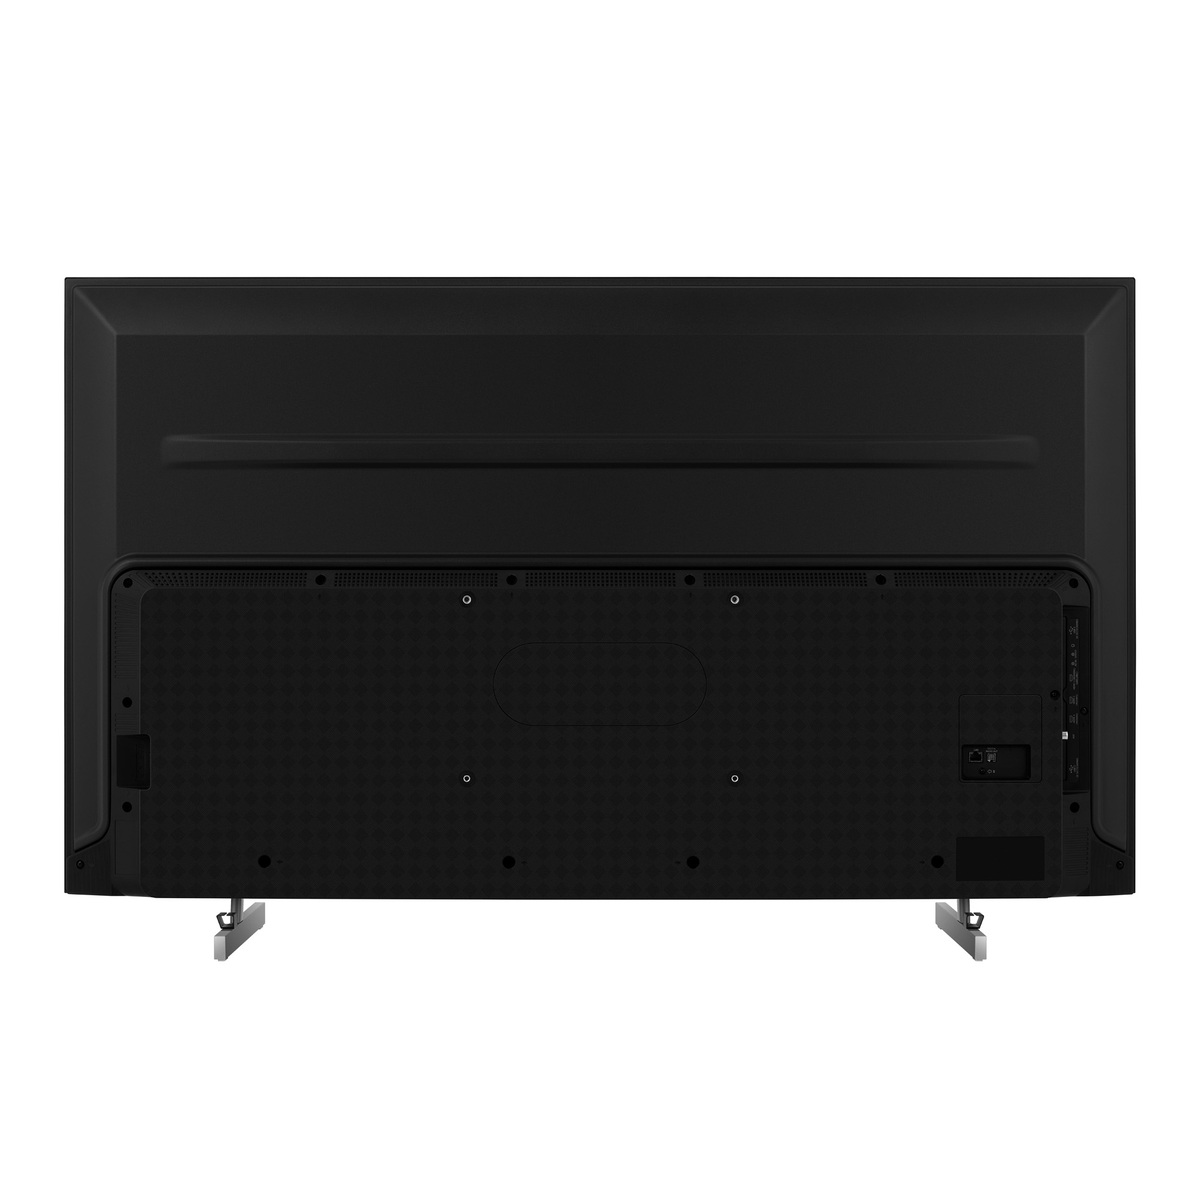 Hisense 65 inches 4K Smart Mini LED TV 65U6K-PRO